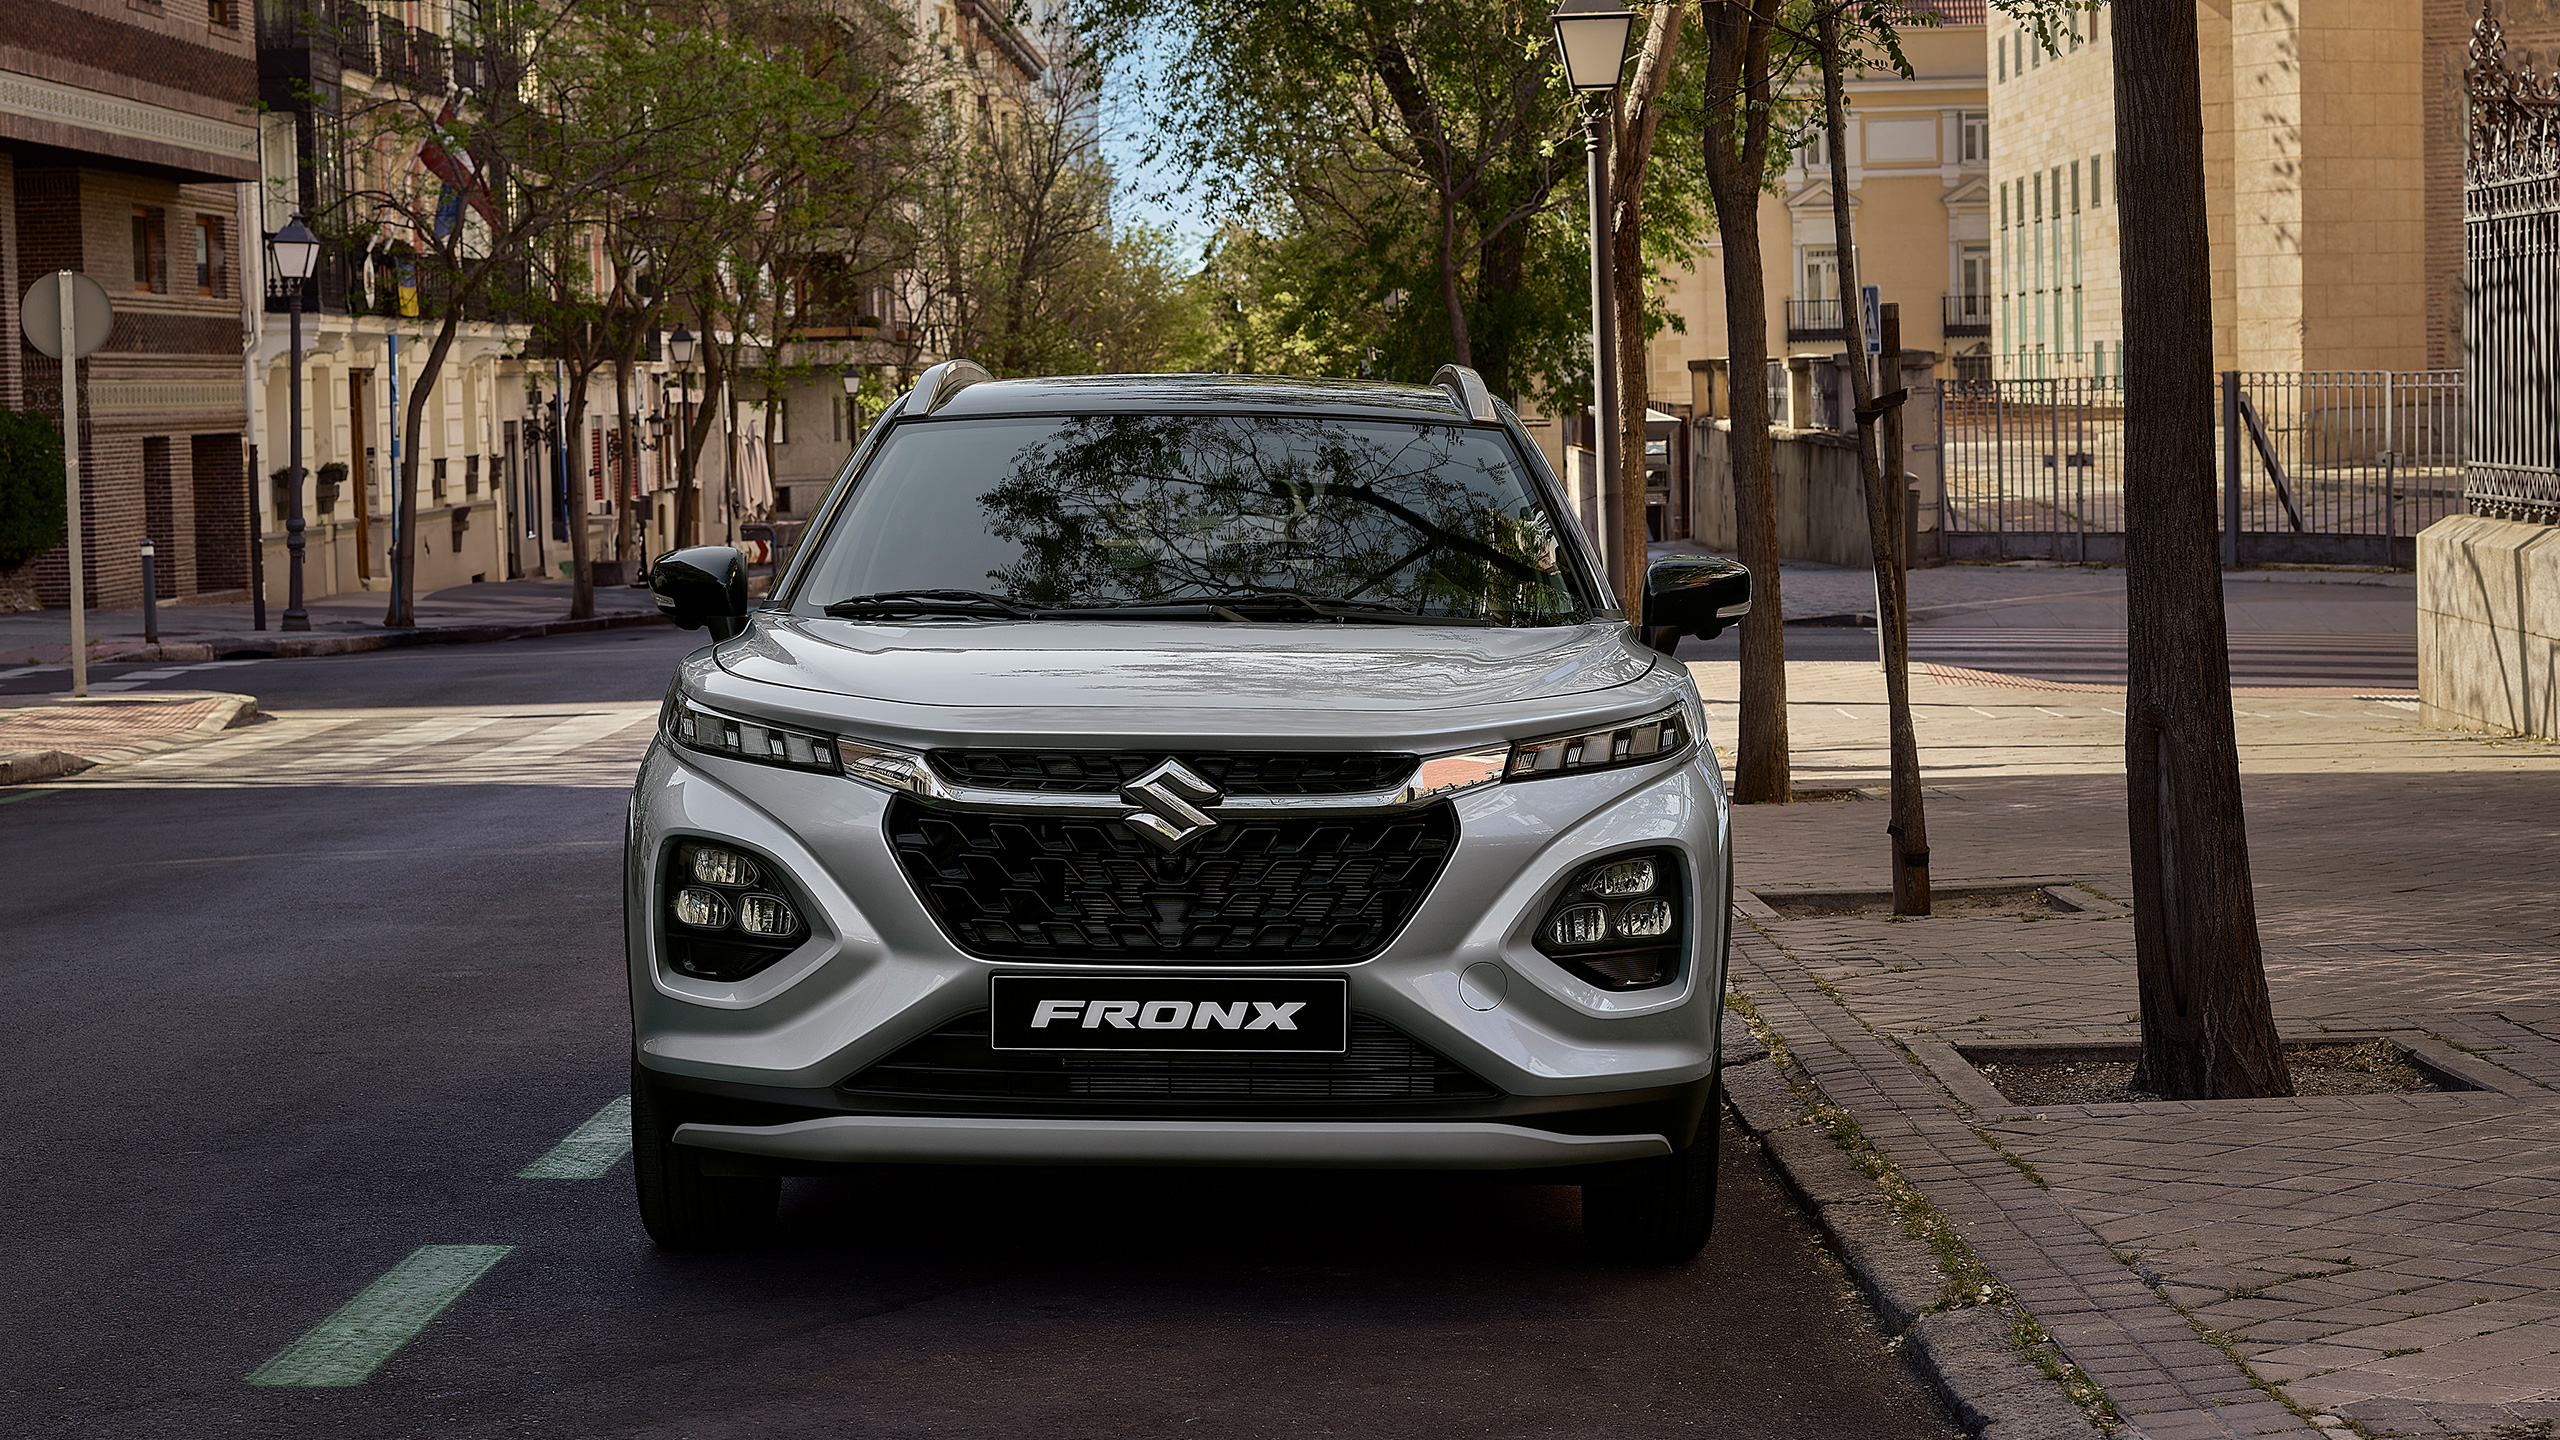 Suzuki-Fronx-parking-in-city-front-view